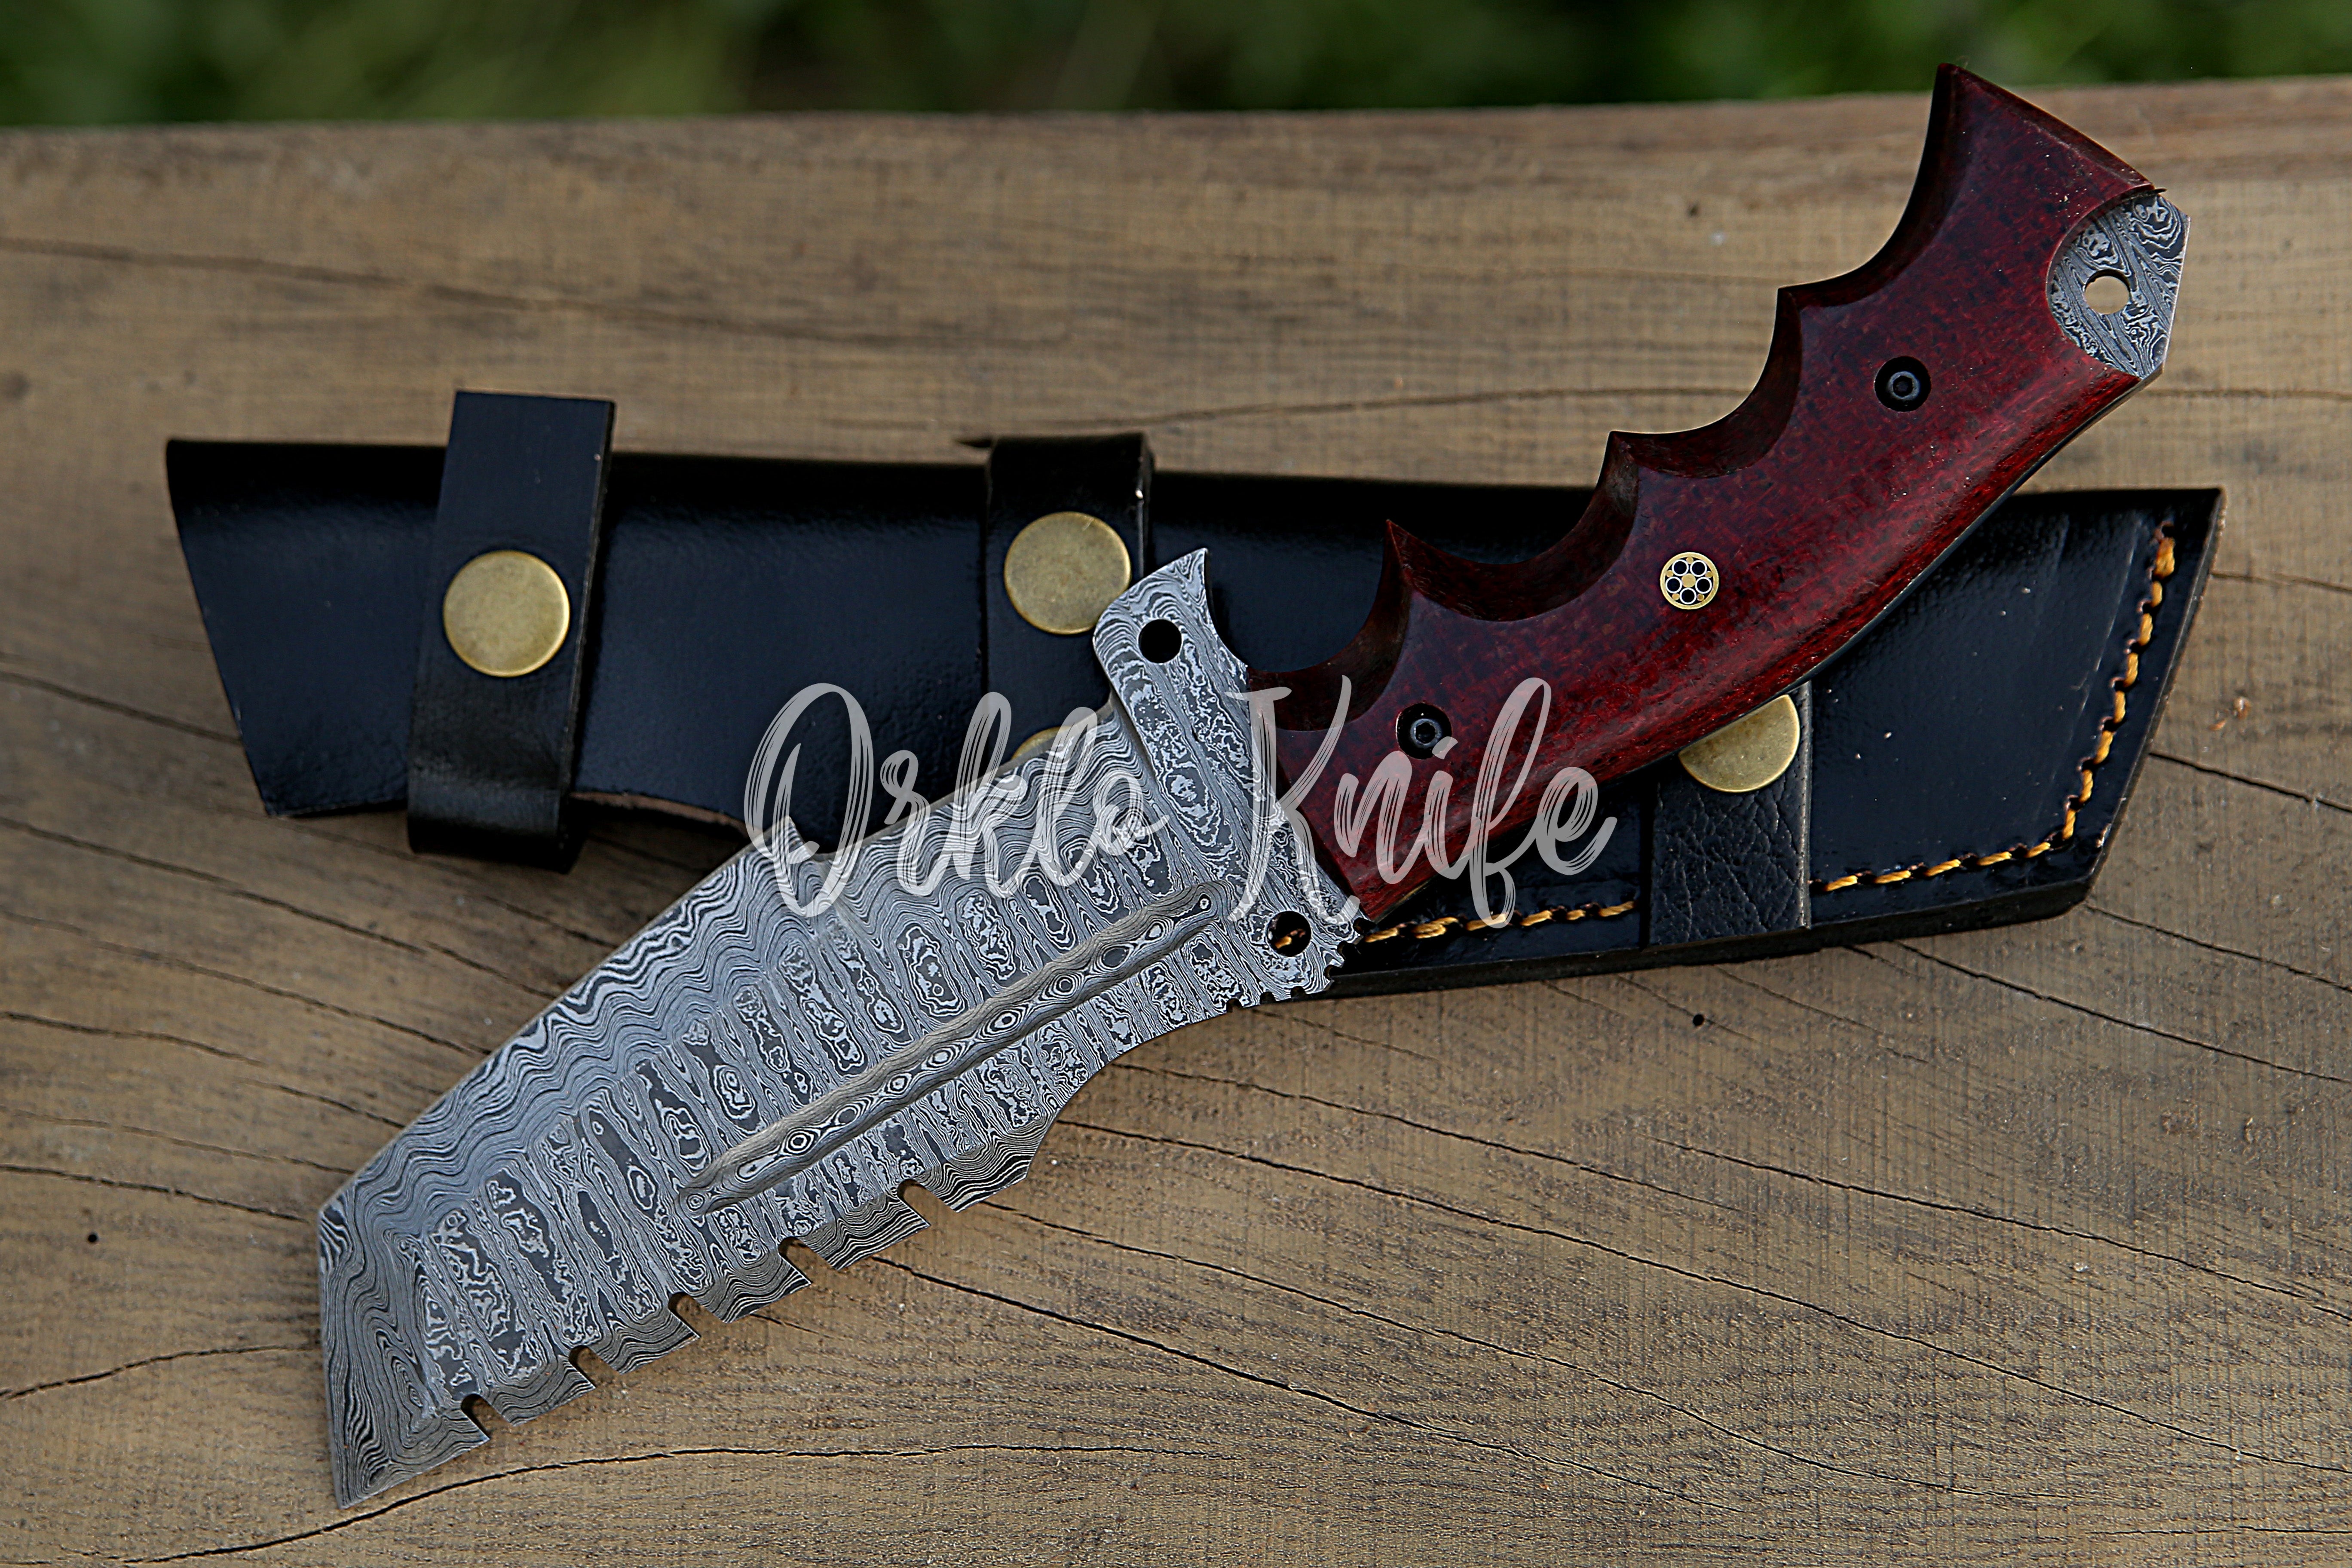 Damascus Tracker knife - Orkloknife